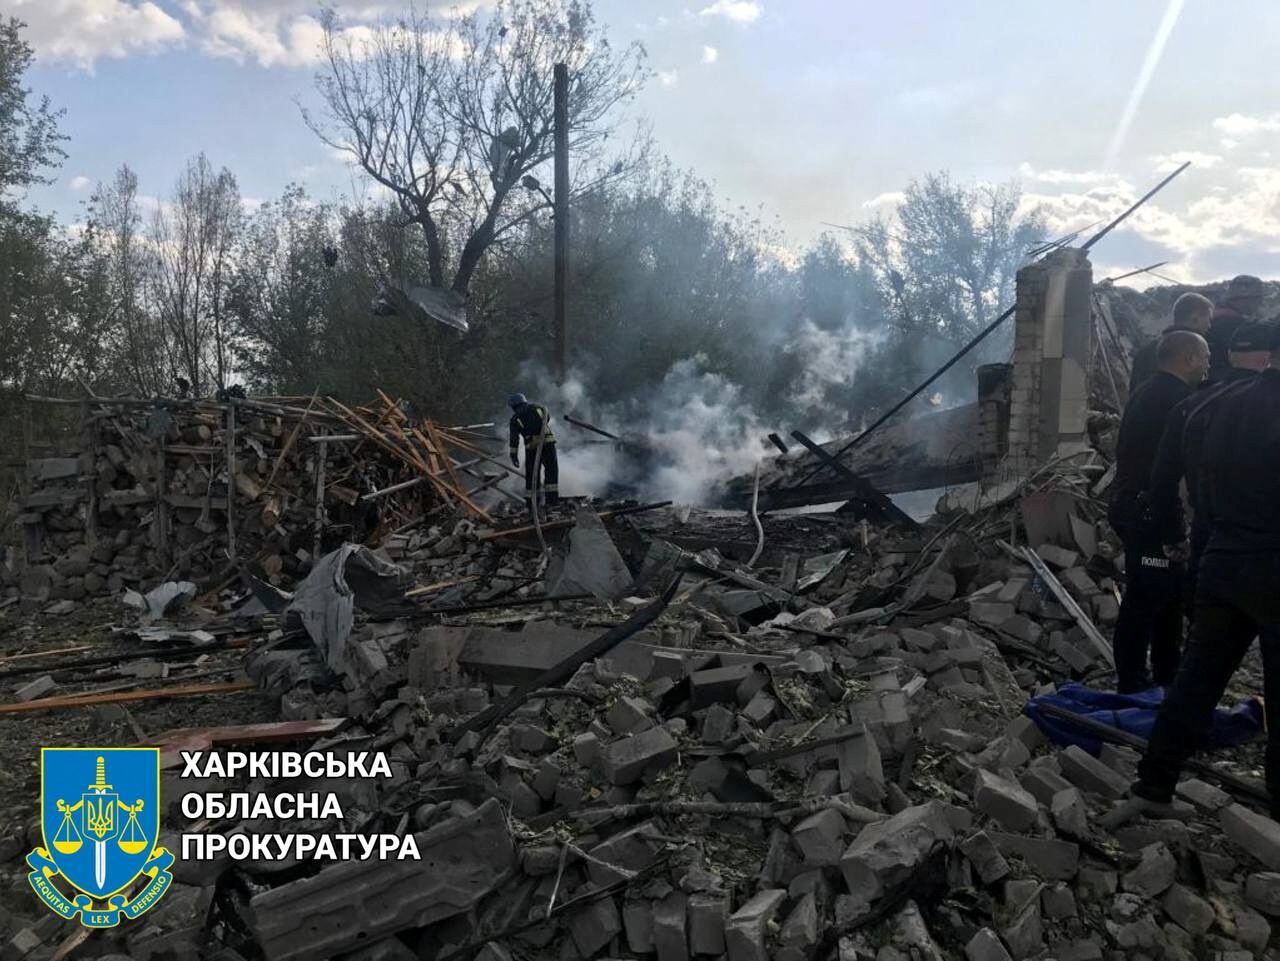 Al acto habían asistido unas 60 personas y entre los muertos hay un niño de seis años (Kharkiv Regional Prosecutor's Office/Handout via REUTERS)